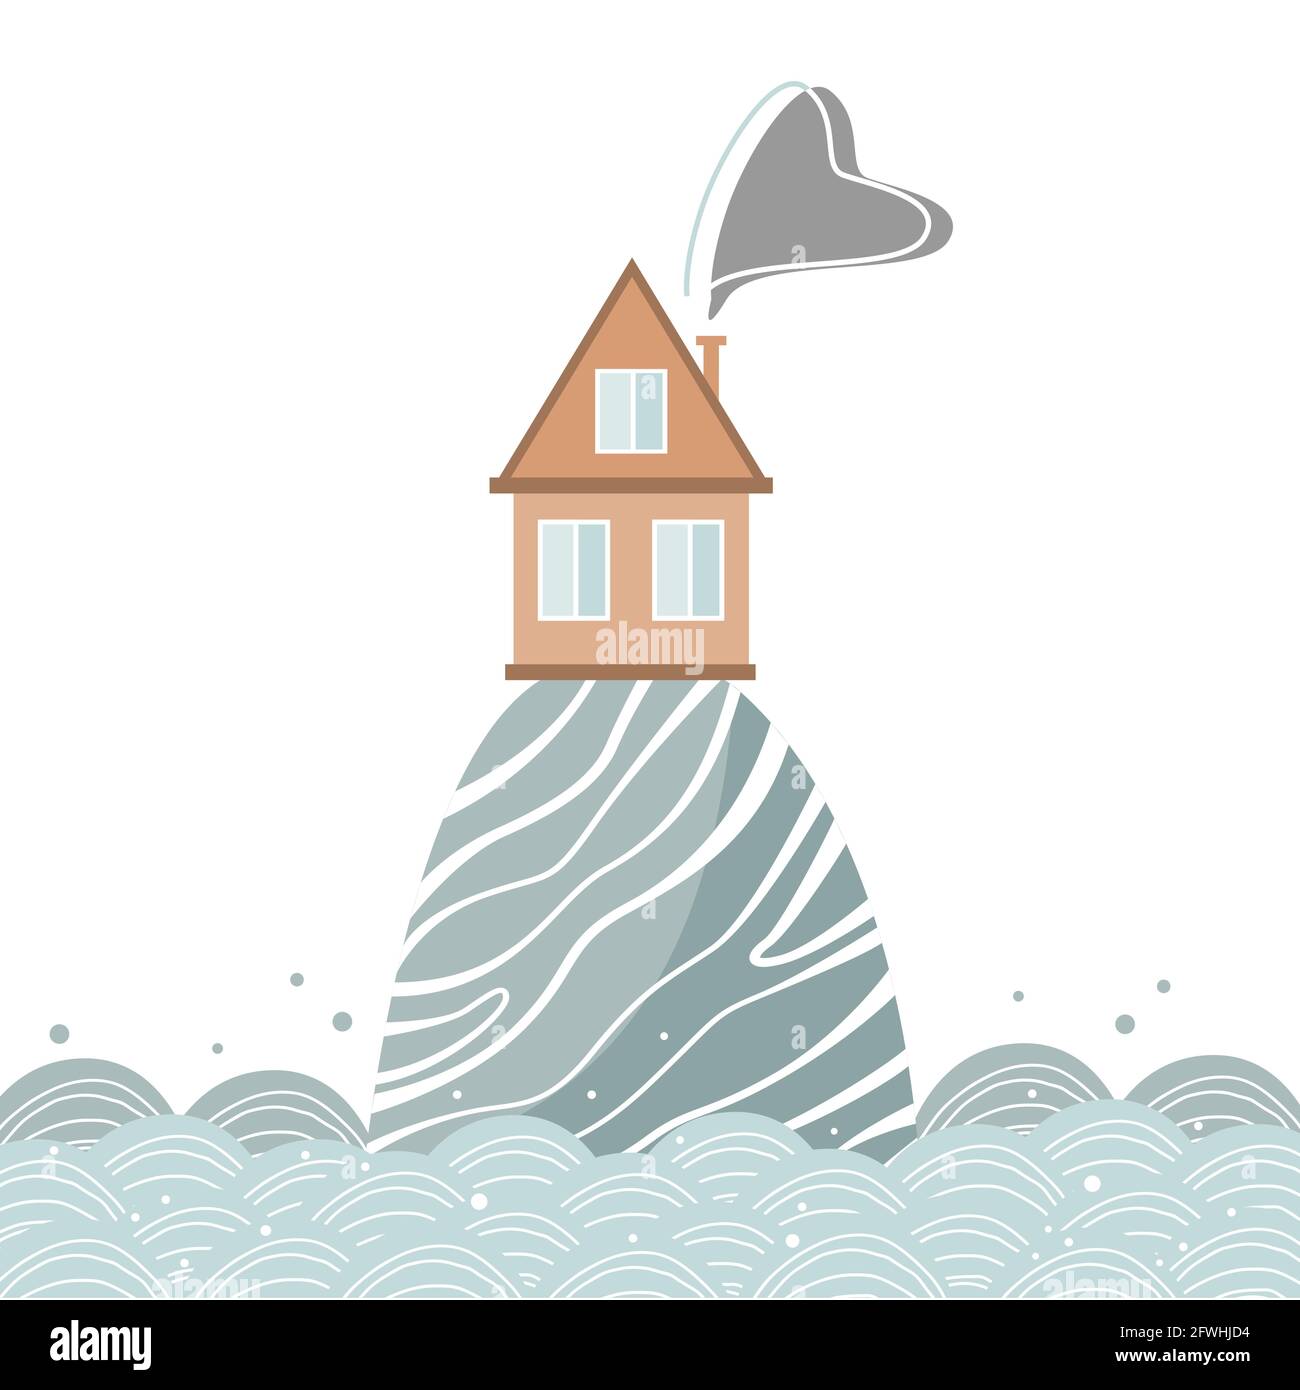 Stilvolle Karte mit Cartoon-Haus auf dem Hügel im Meer, skandinavischen Stil. Vektorgrafik isoliert auf Weiß Stock Vektor